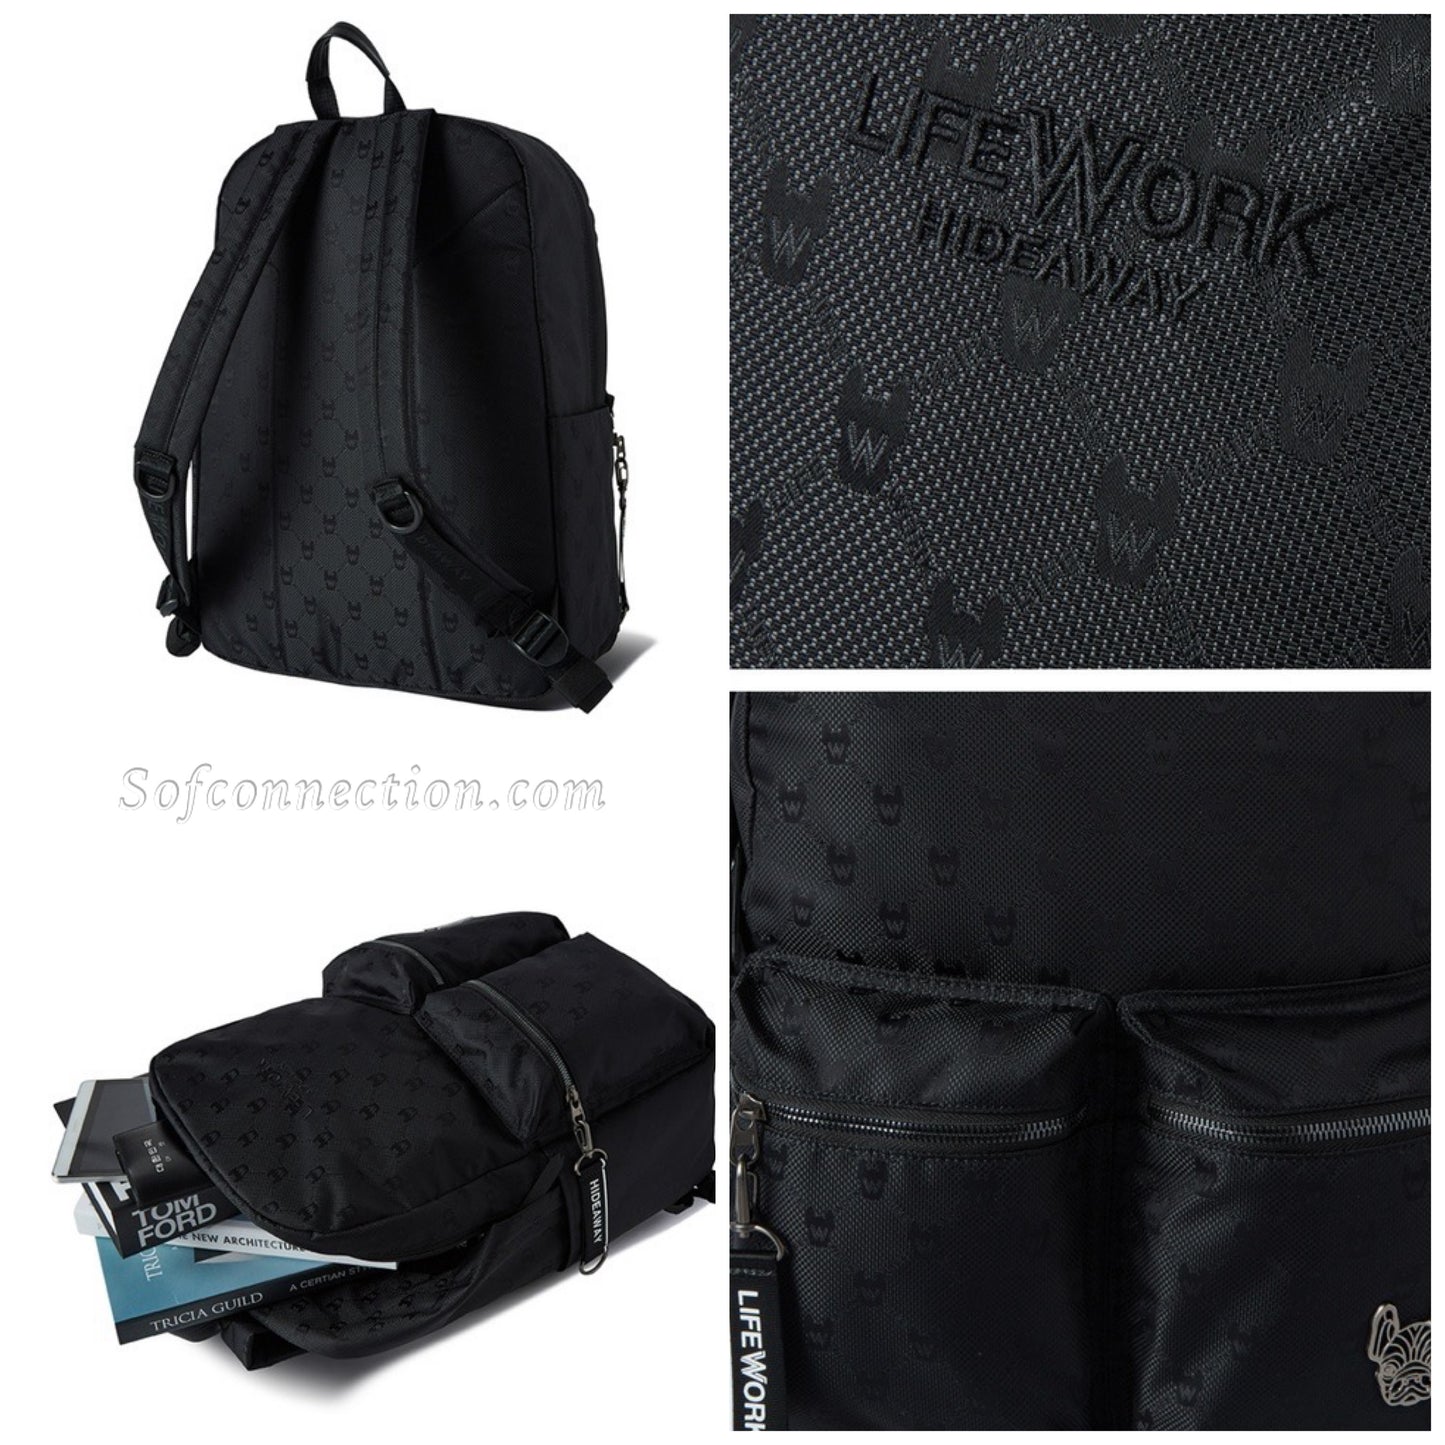 LIFEWORK Jacquard Monogram Backpack